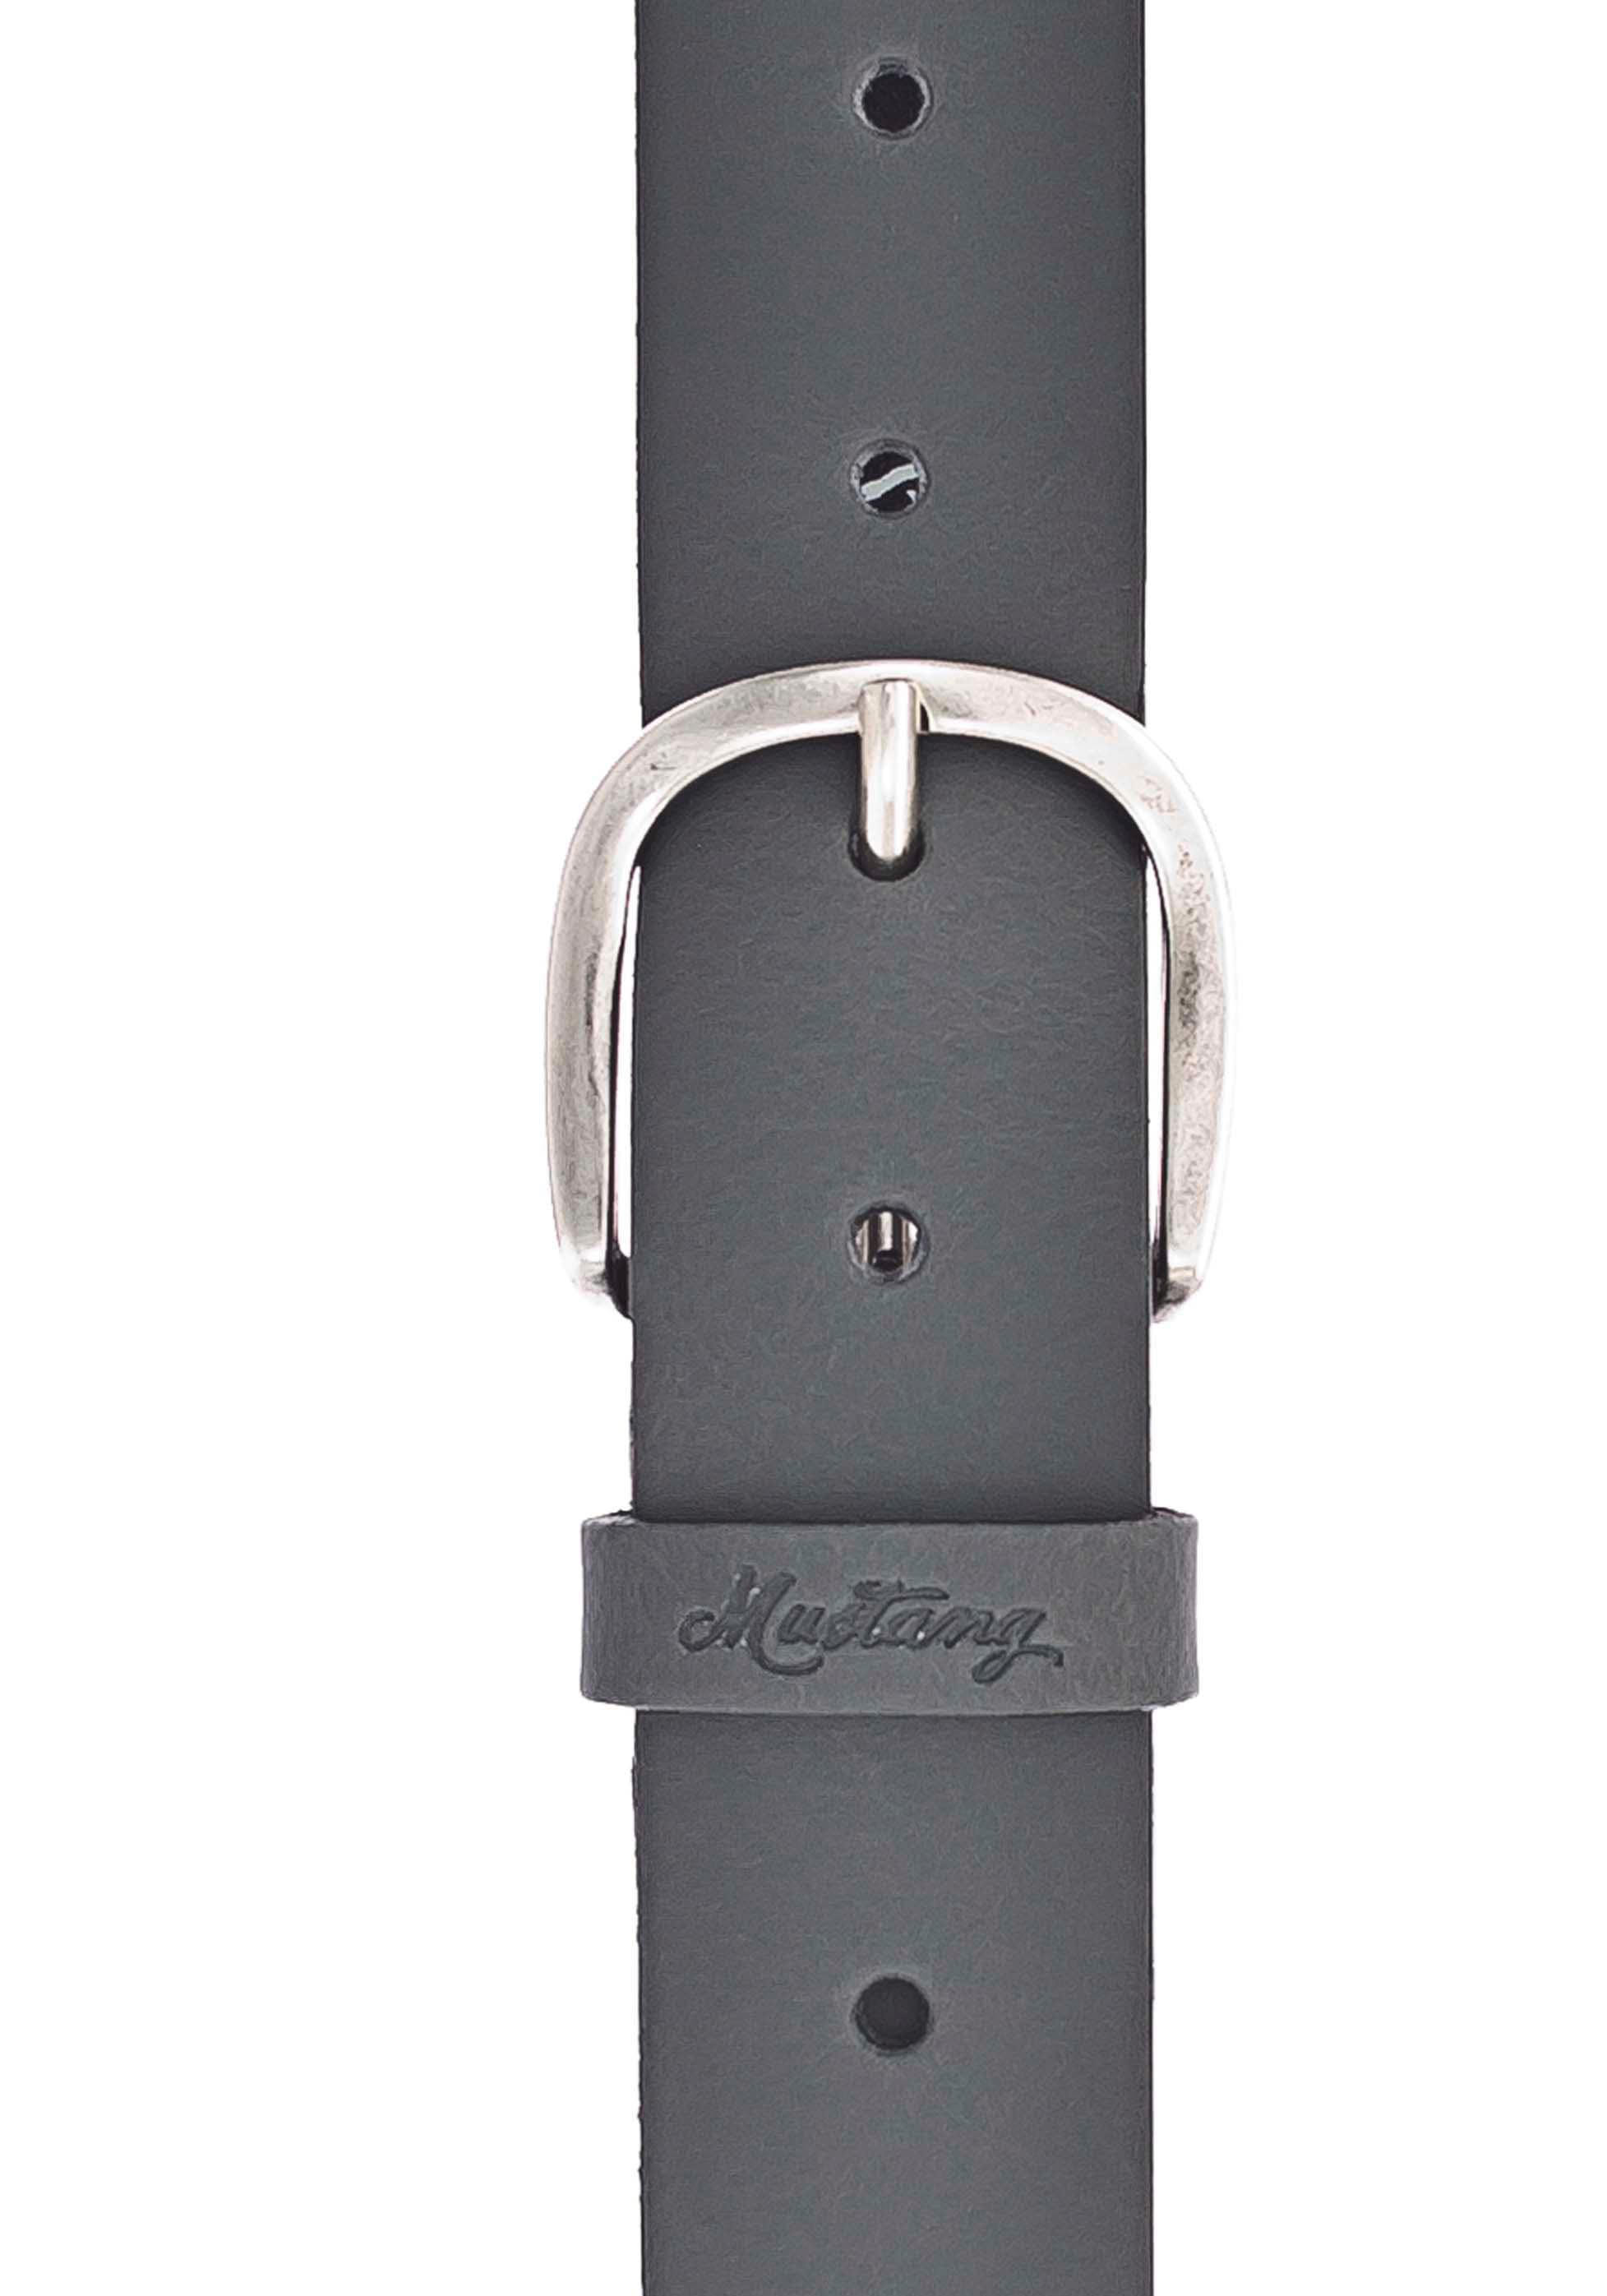 MUSTANG Ledergürtel, mit der MUSTANG-Logo günstig kaufen geprägtem Schlaufe auf